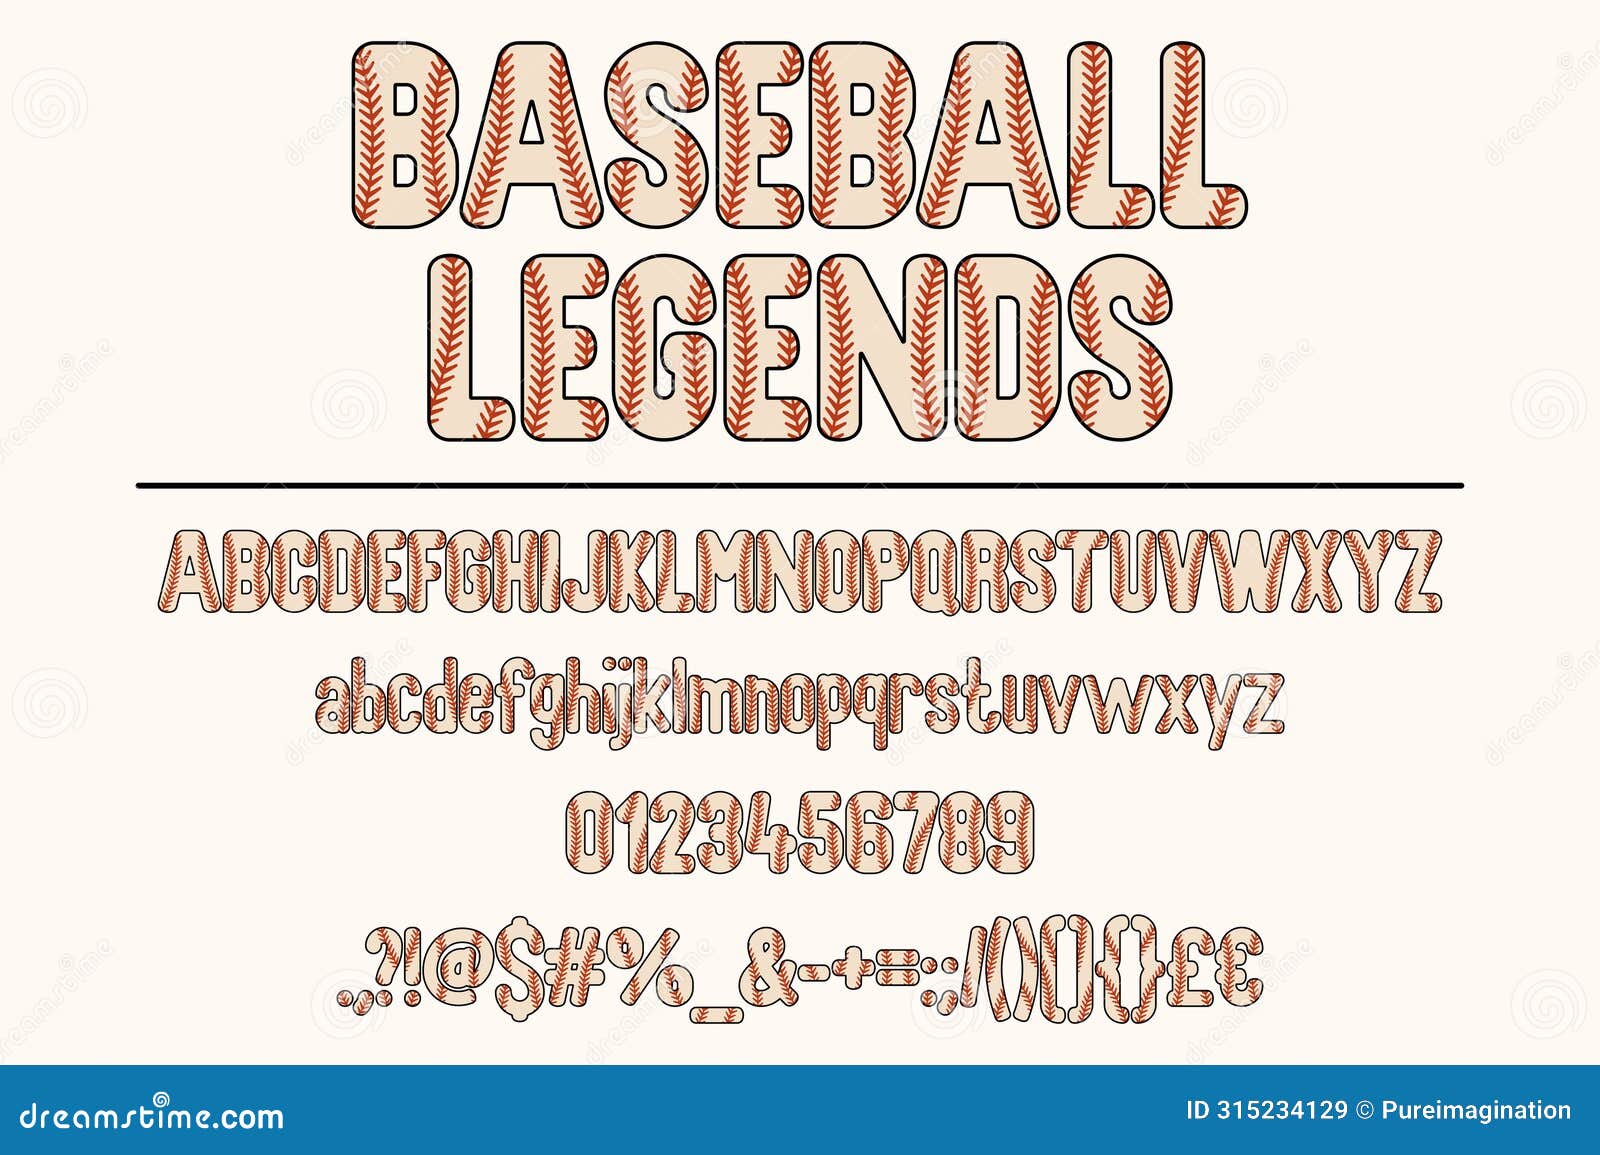 vintage baseball legends font set